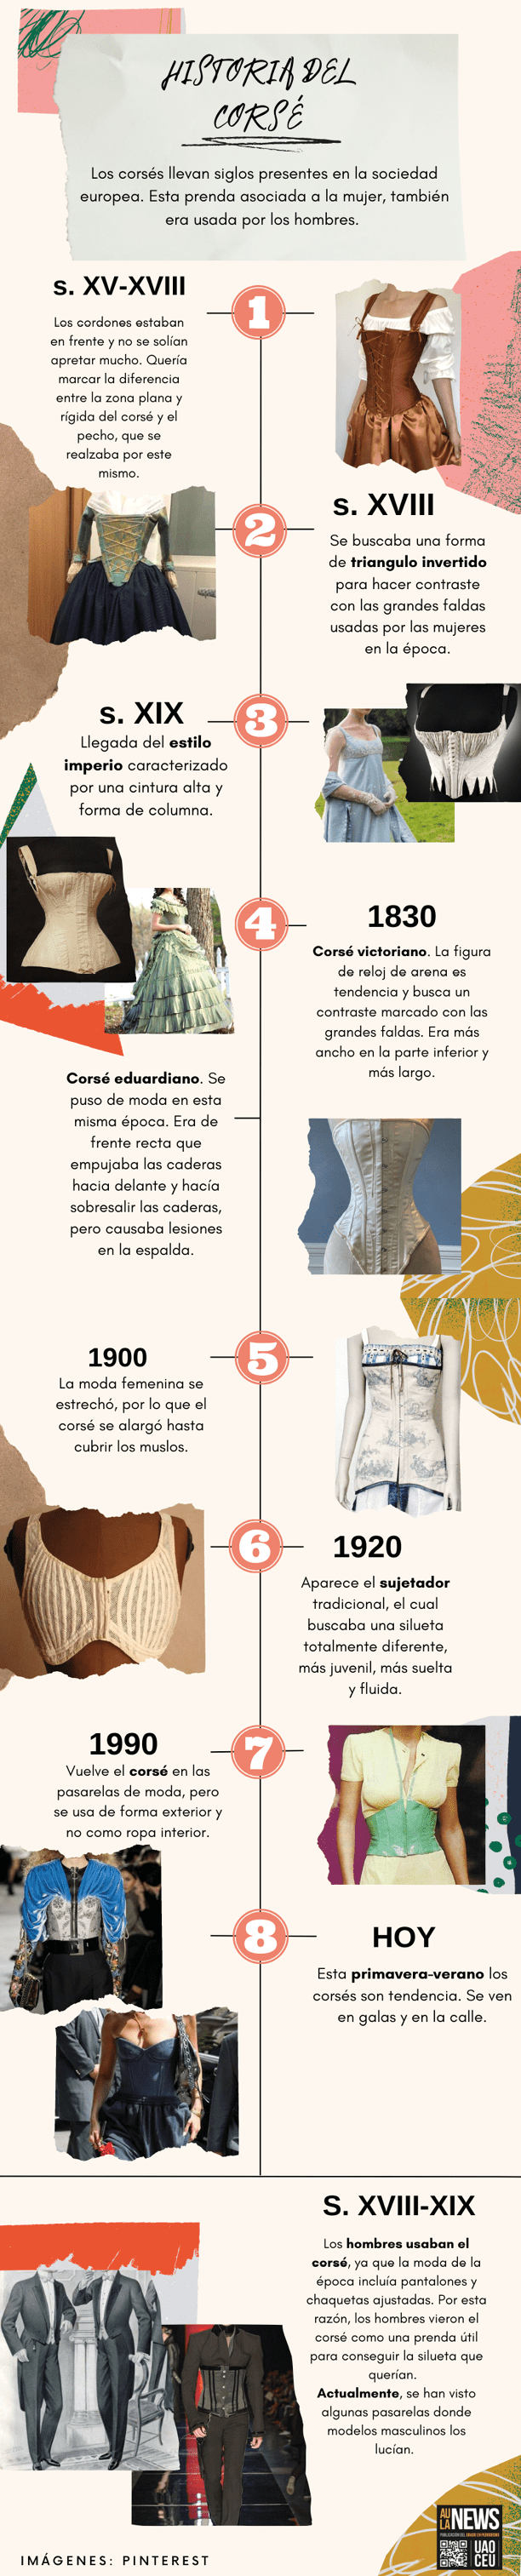 Infografía de la historia de los corsés/ Anna Carricas